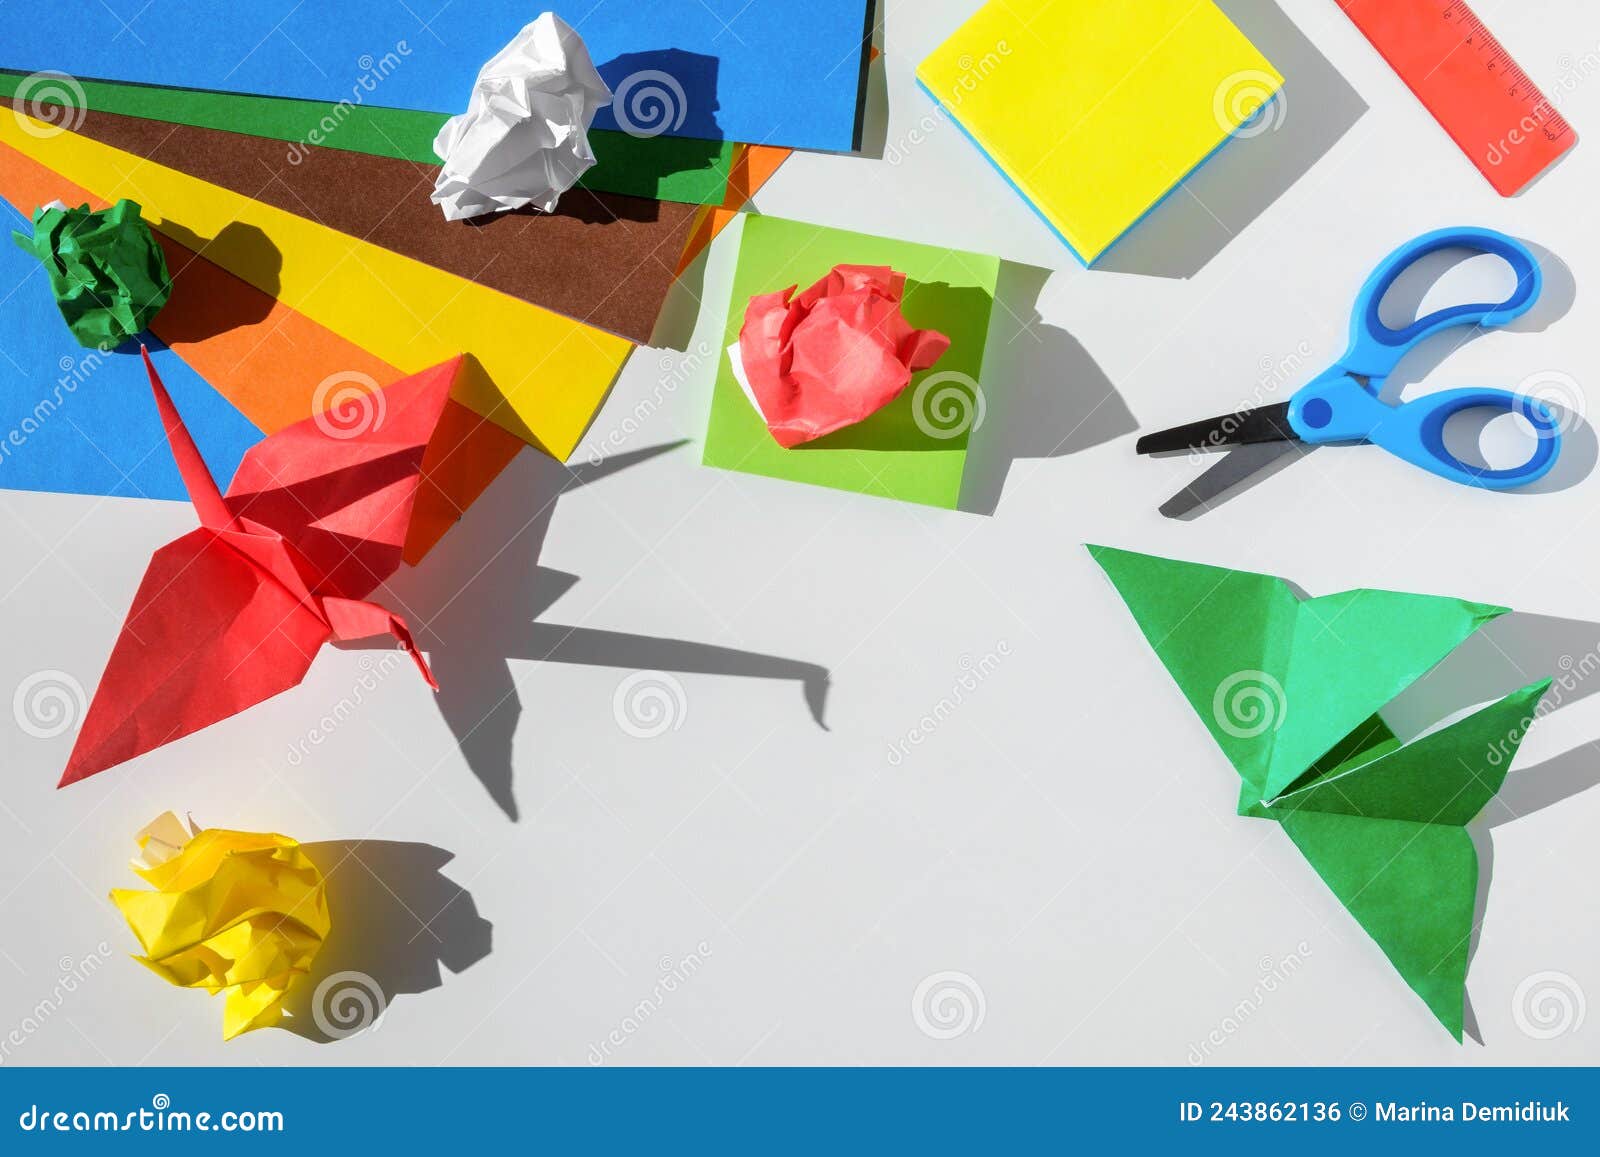 Origami Craft Scissors